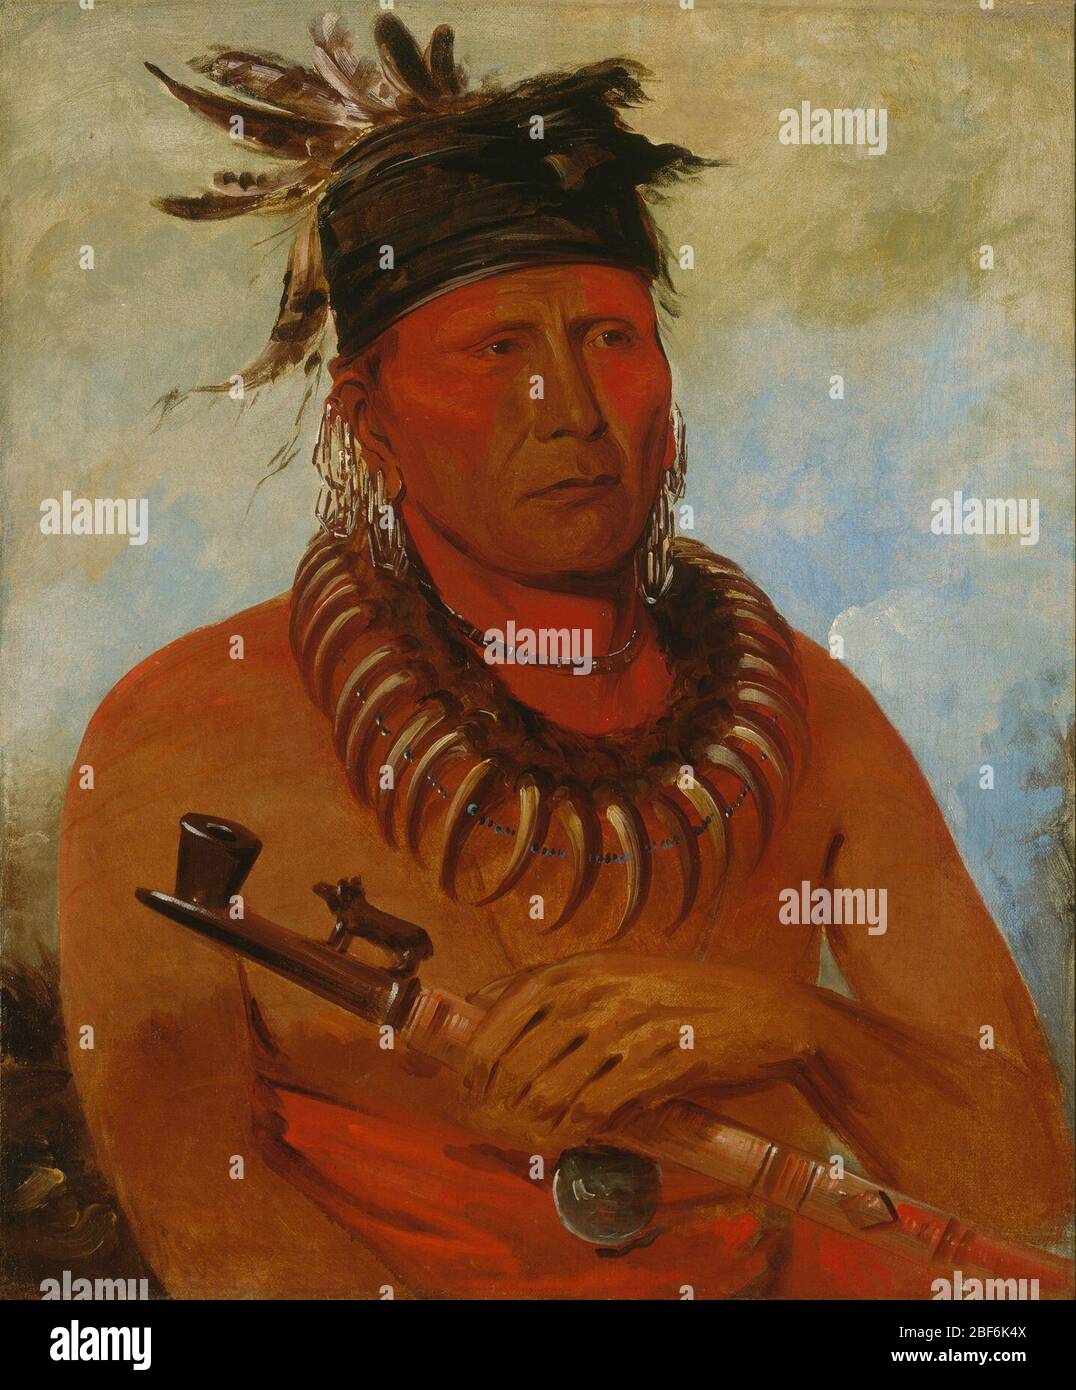 Hwchekesgga Er, der den Osages-Chef des Stammes tötet. George Catlin beschrieb He Who Kills the Osages als „einen alten Mann“, der eine „Kette aus gruseligen Bärenkrallen und eine schöne geschnitzte Pfeife in seiner Hand trägt.“ Der Name Kills the Osages ist ein roter Hintergrund für die Geschichte seines Stammes sowie für seine eigenen Kampfleistungen. Stockfoto